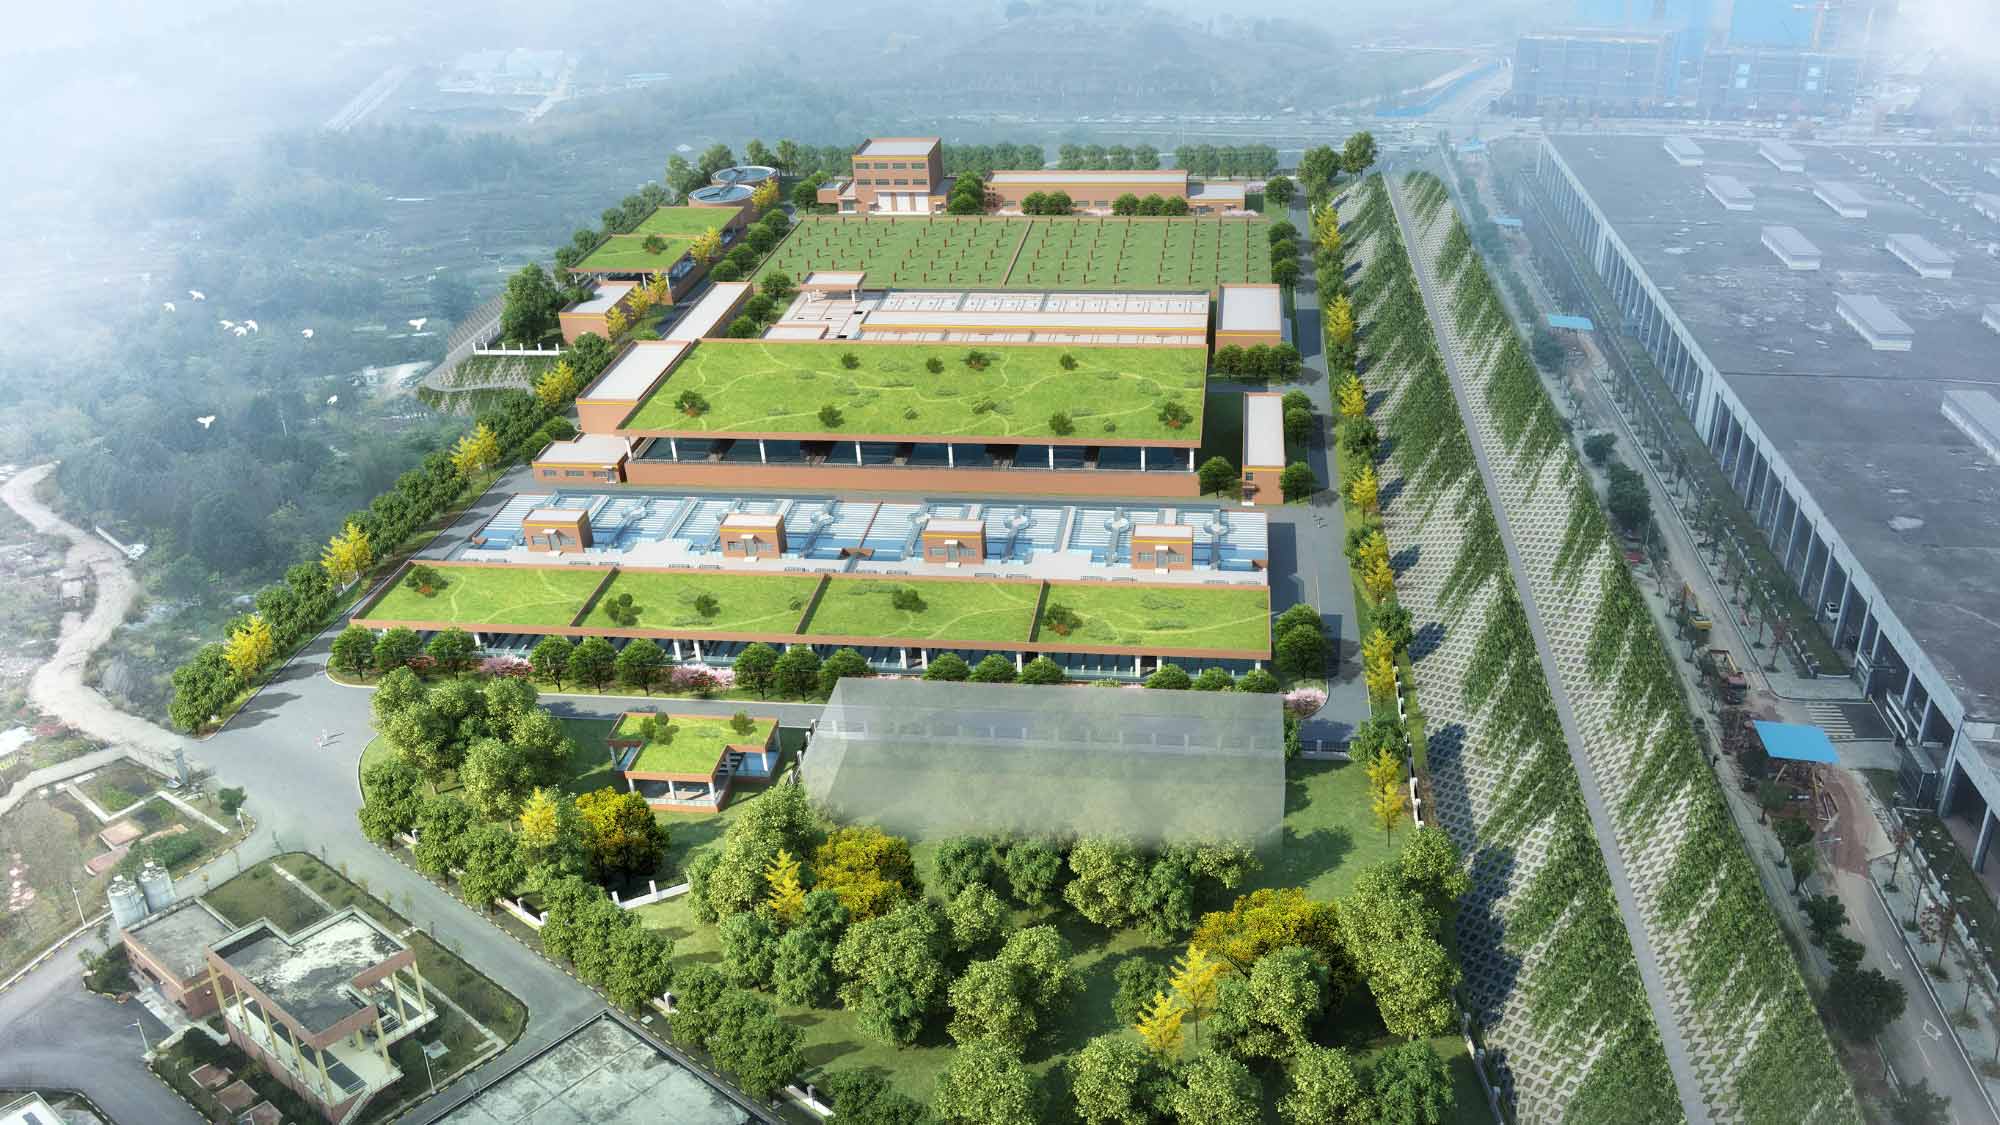 Vue aérienne en 3D du projet d’usine de traitement de l’eau Chongqing Yuelai - SUEZ